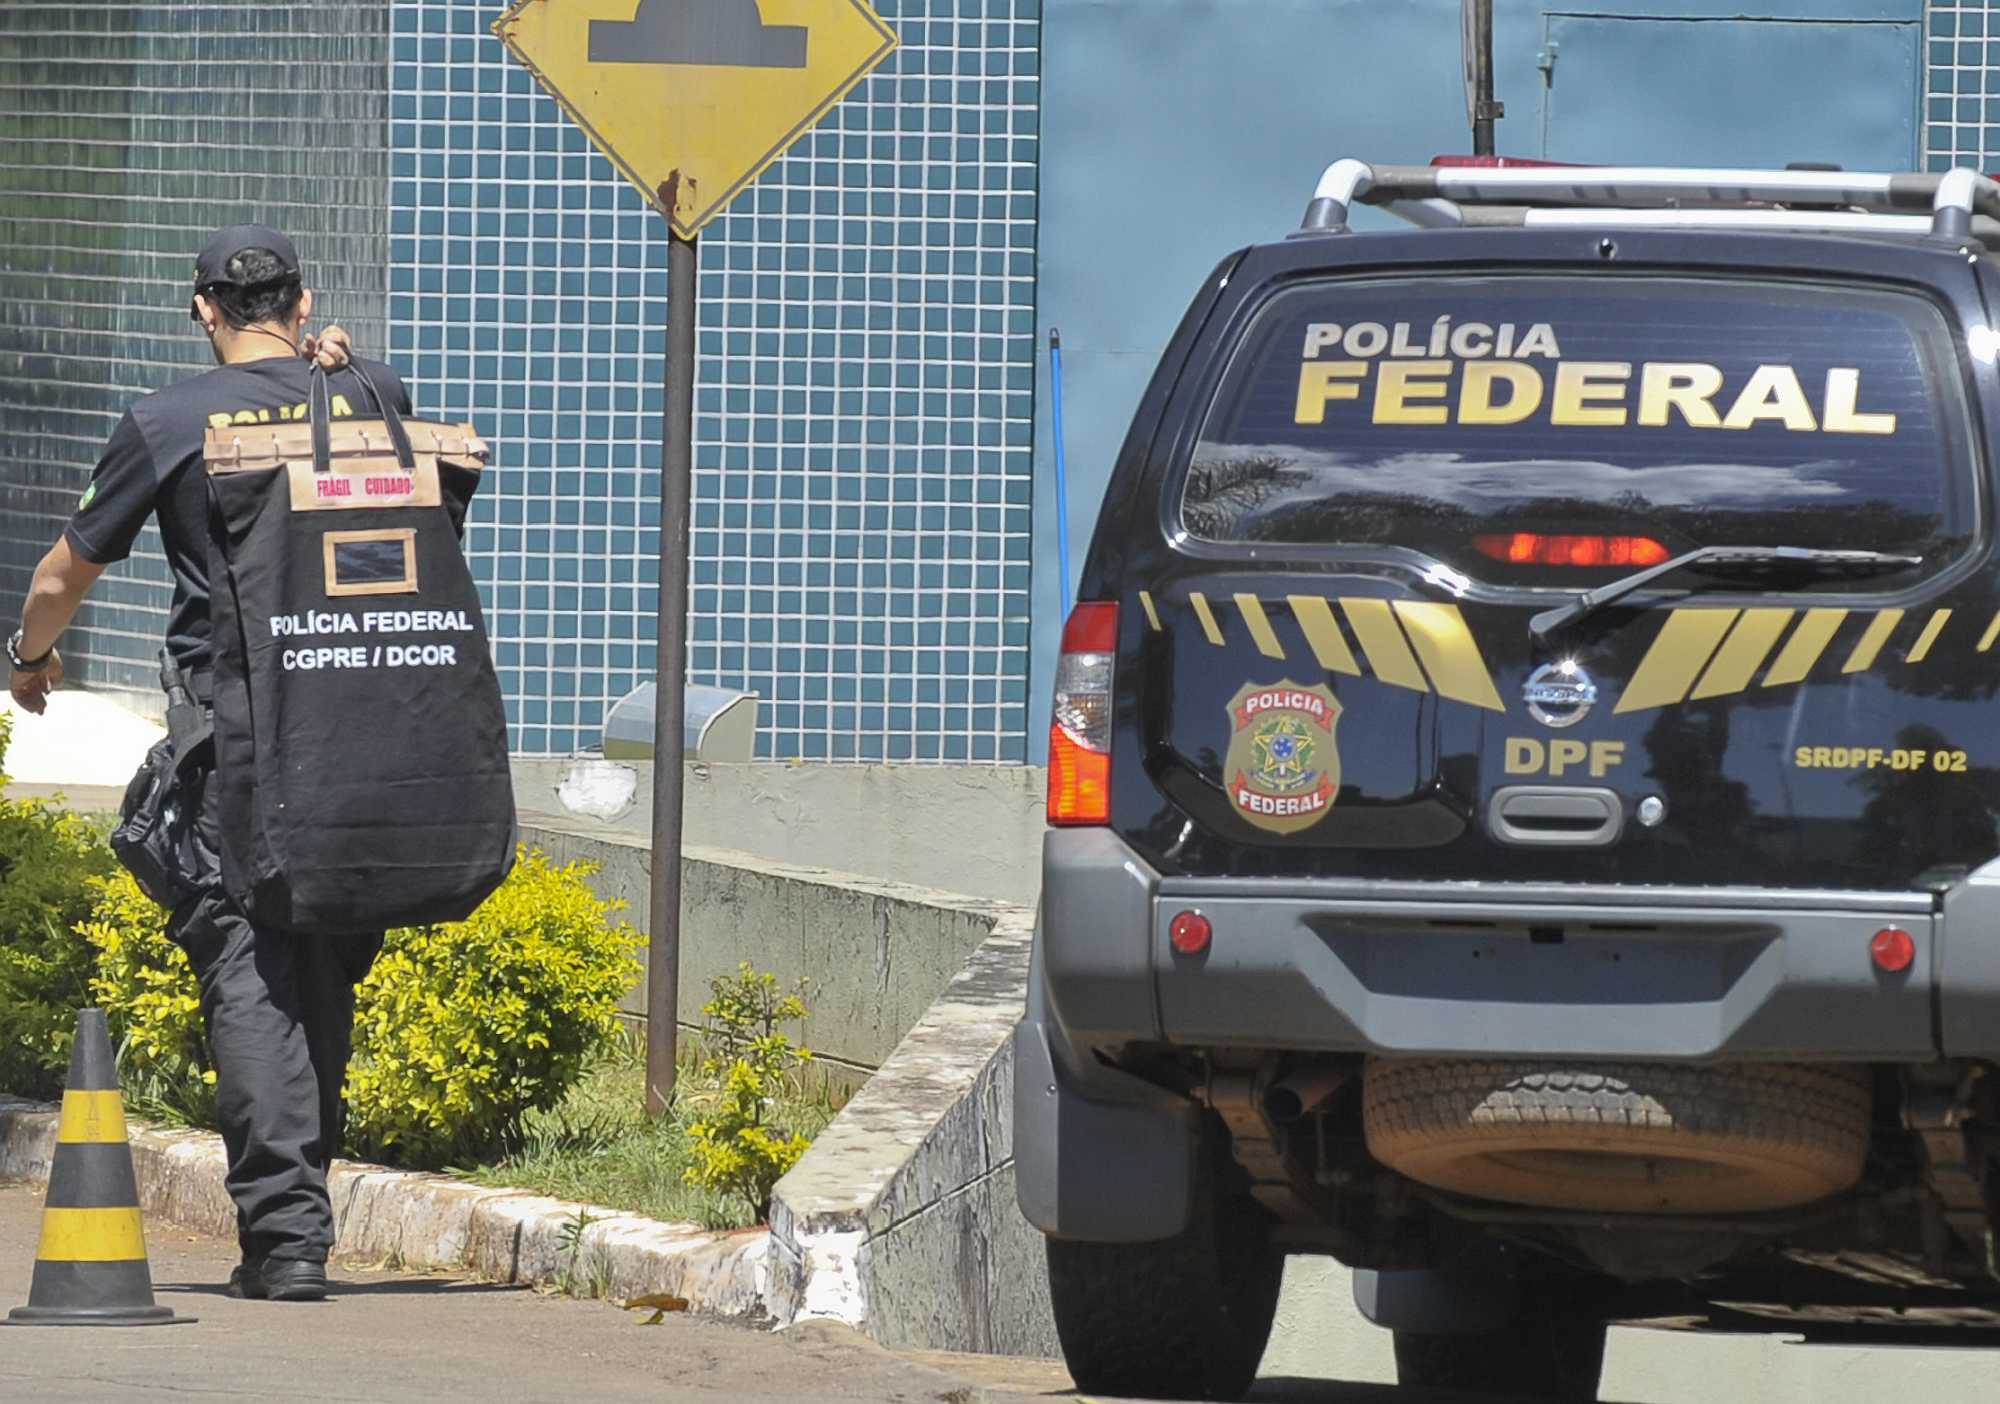 Brazil's federal police